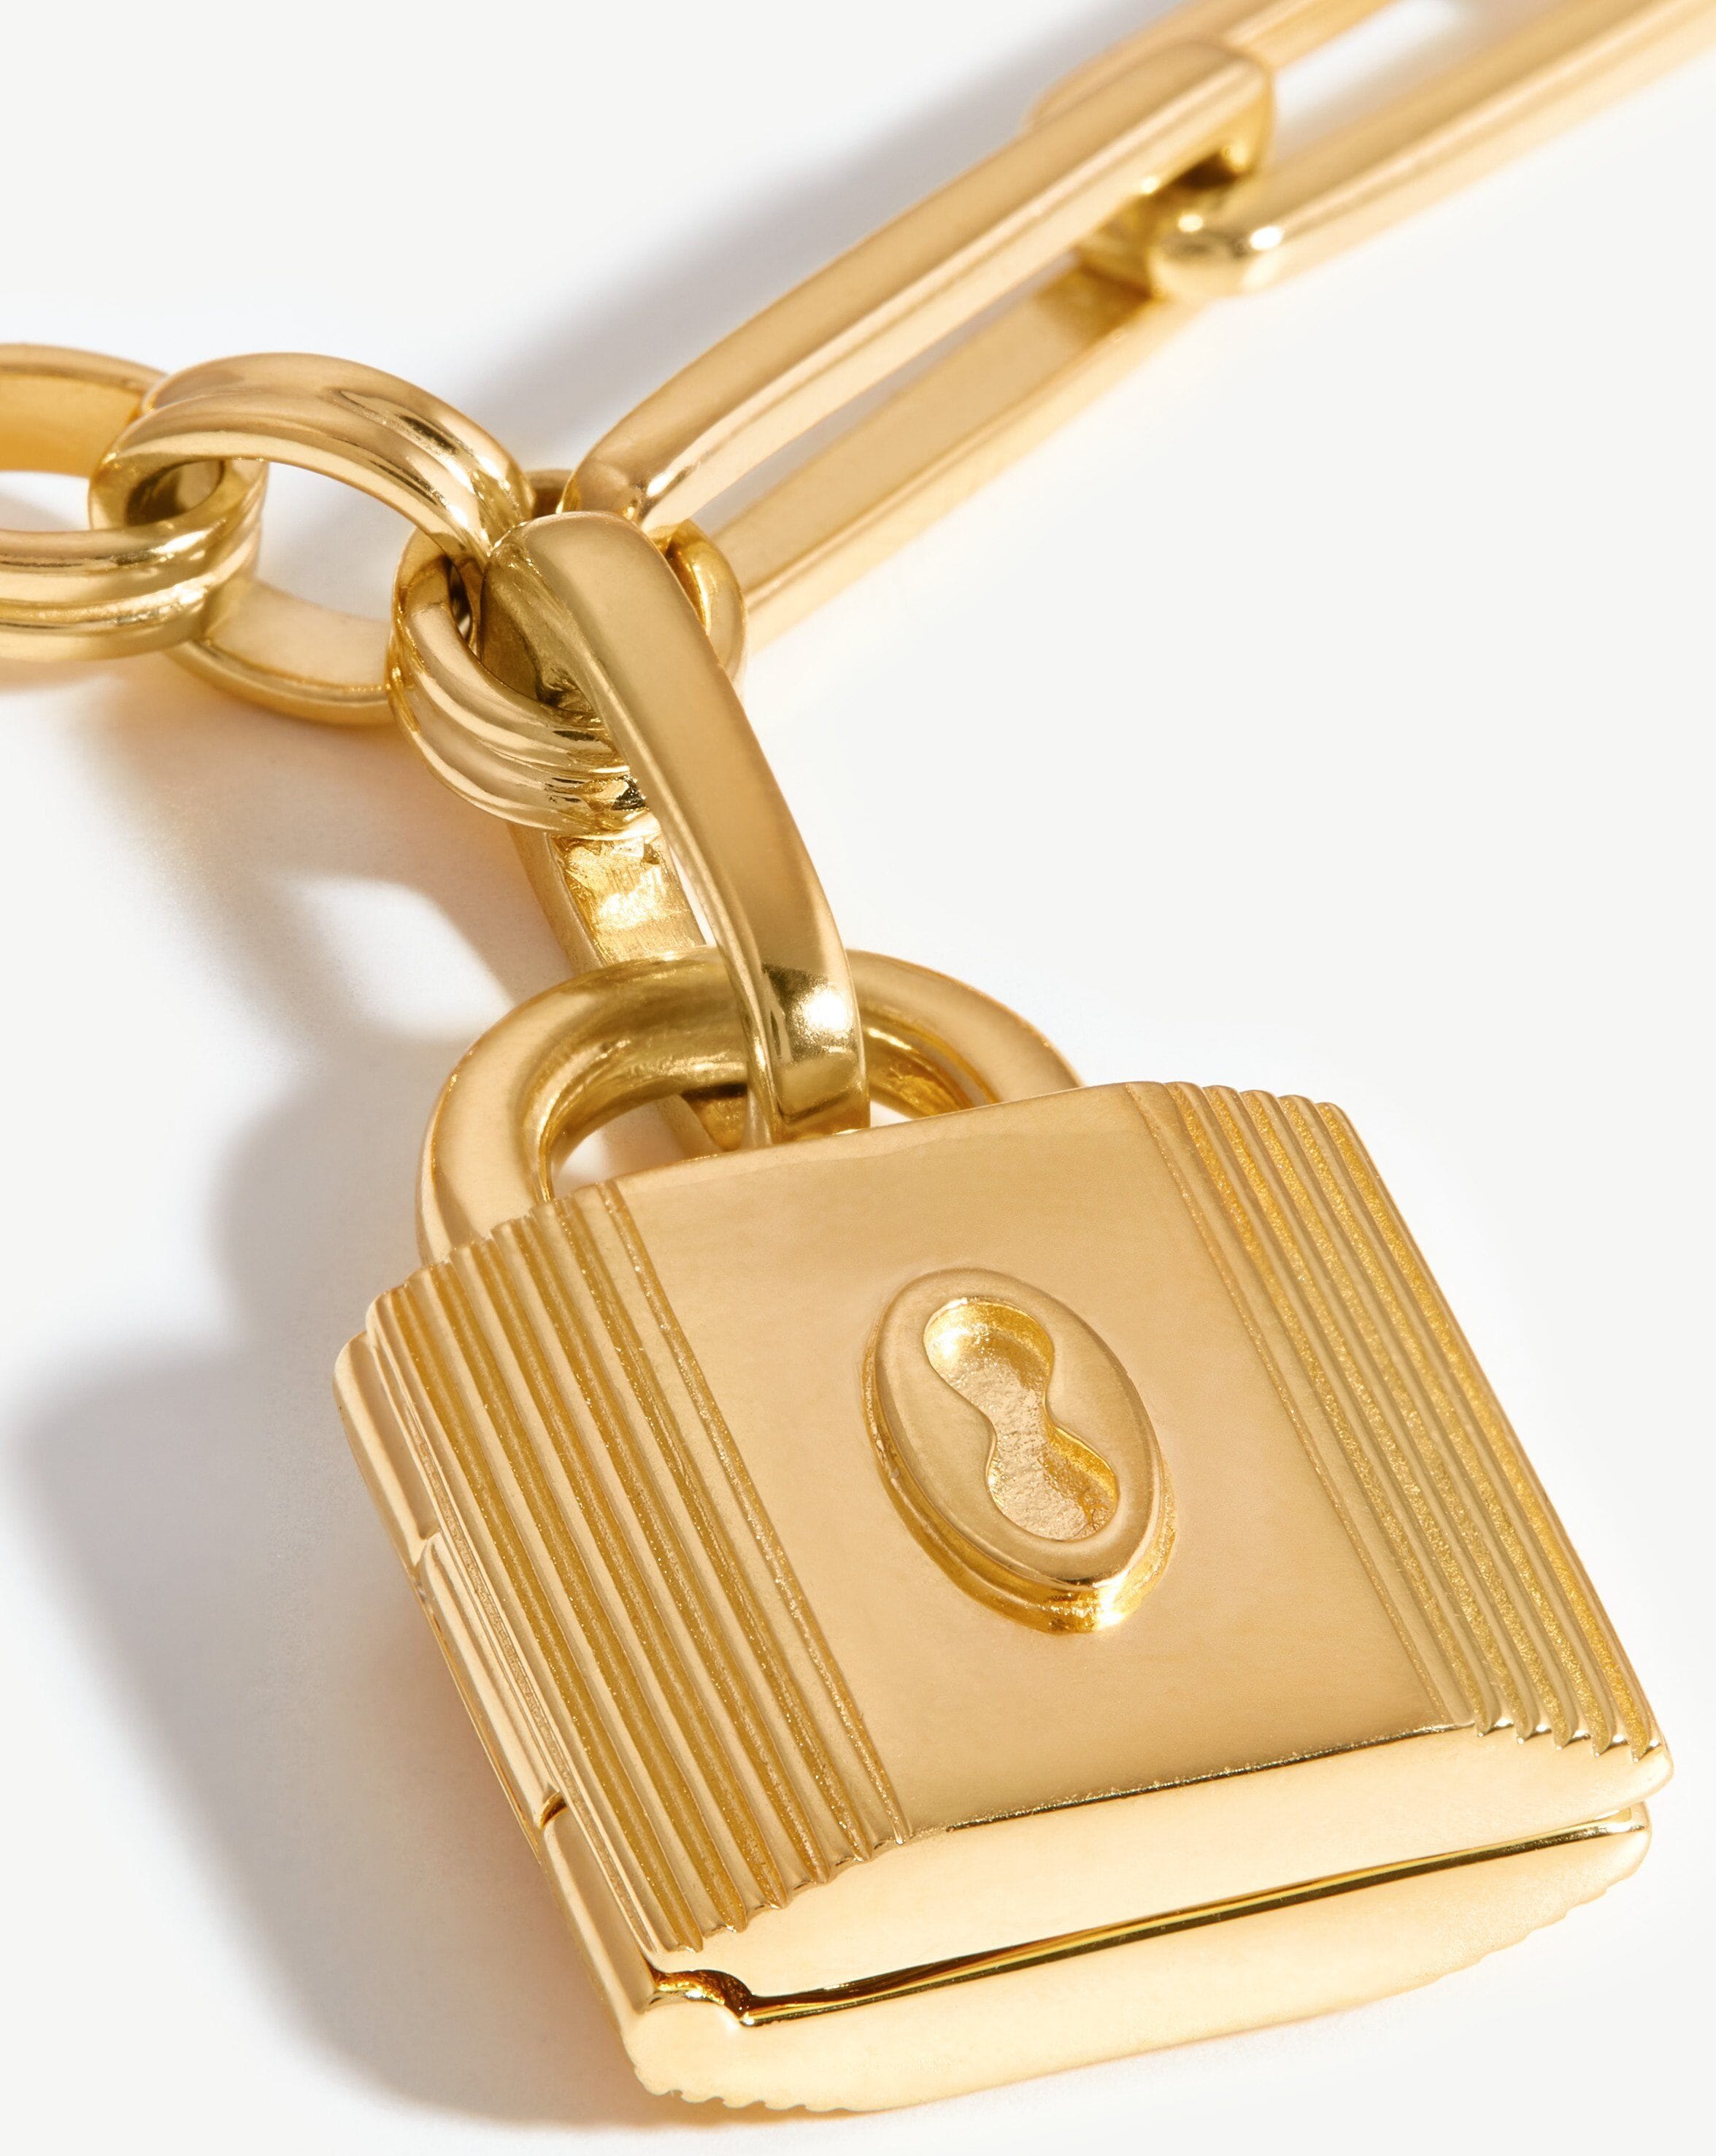 Louis Vuitton 18K Yellow Gold Padlock & Key Bracelet